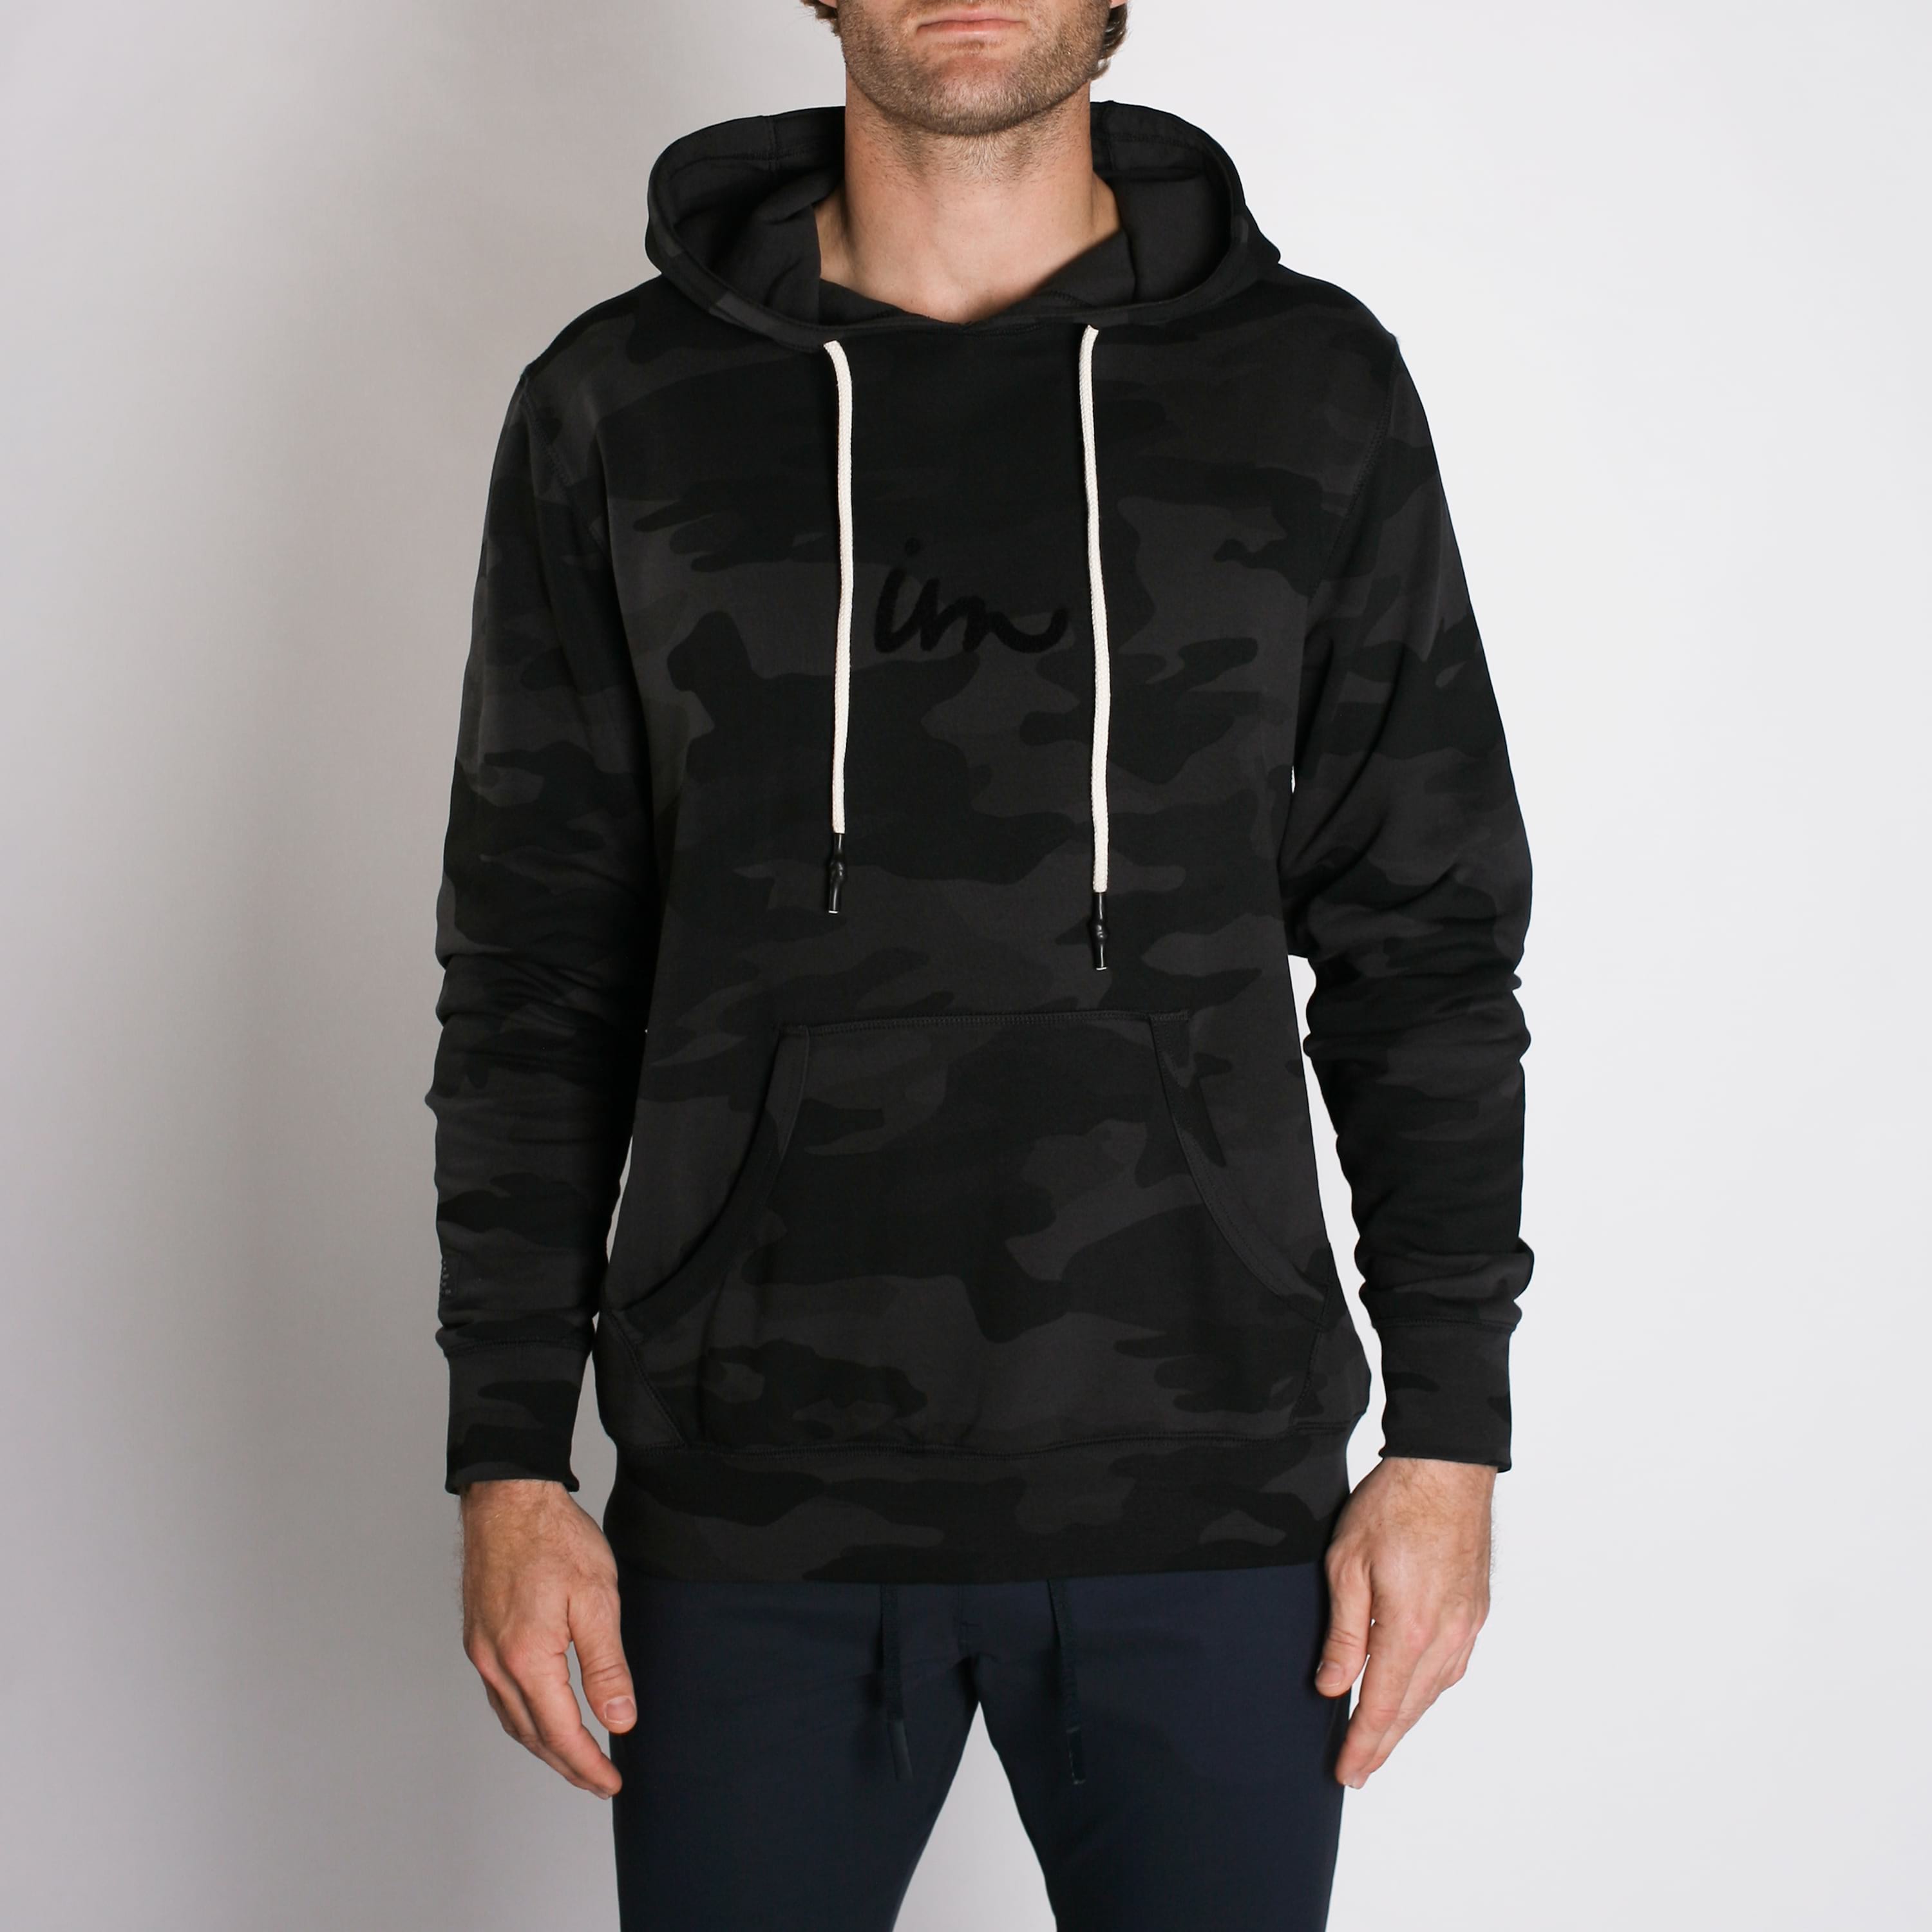 Outpost Makers Pablo Thermal Hoodie - Men's Sweatshirts in Black